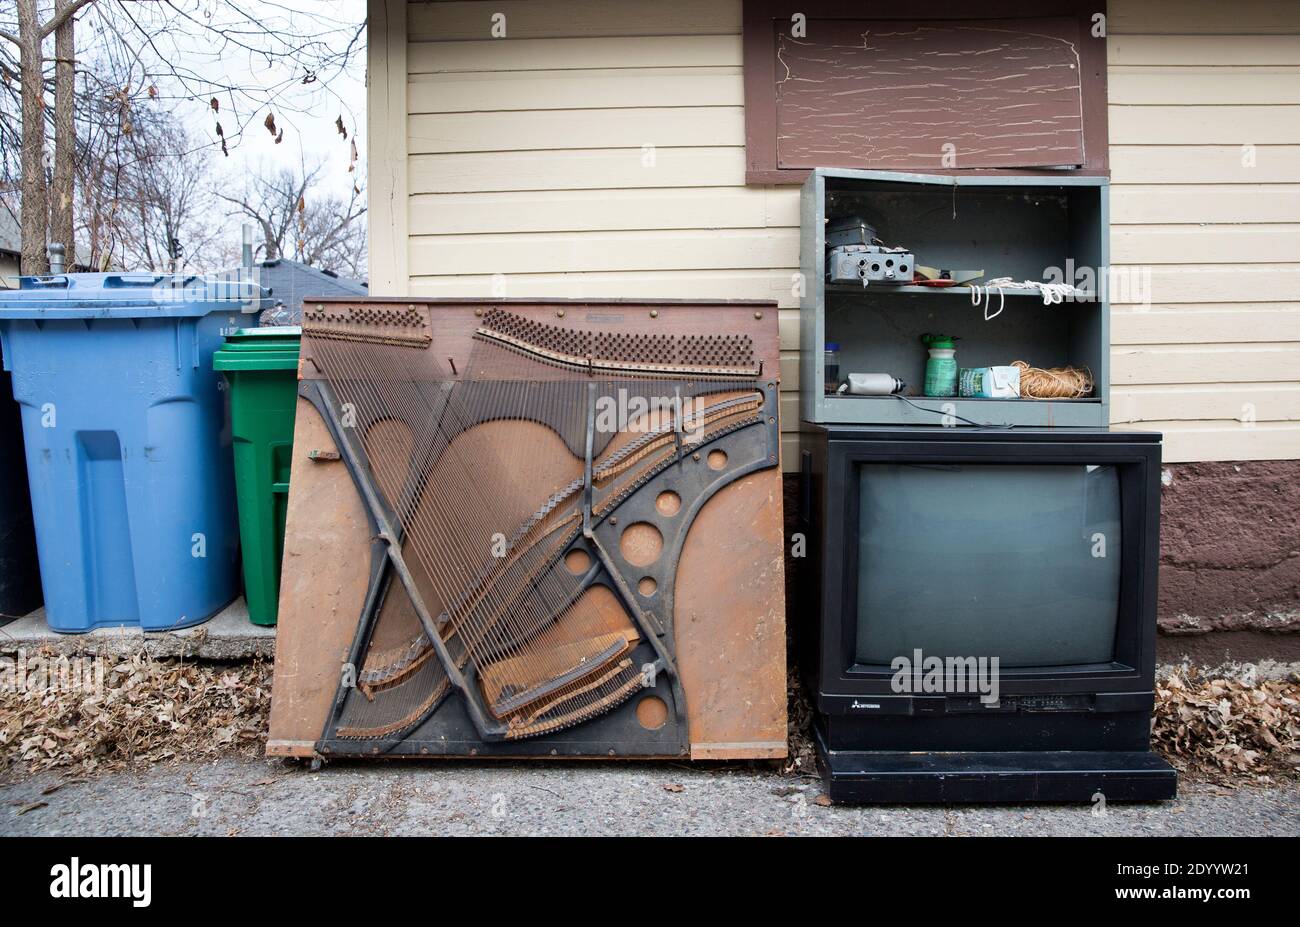 Un vecchio piano verticale soundboard, elettronica, e un televisore nel vicolo in attesa di spazzatura, la rimozione dei rifiuti solidi, e il riciclaggio. Foto Stock